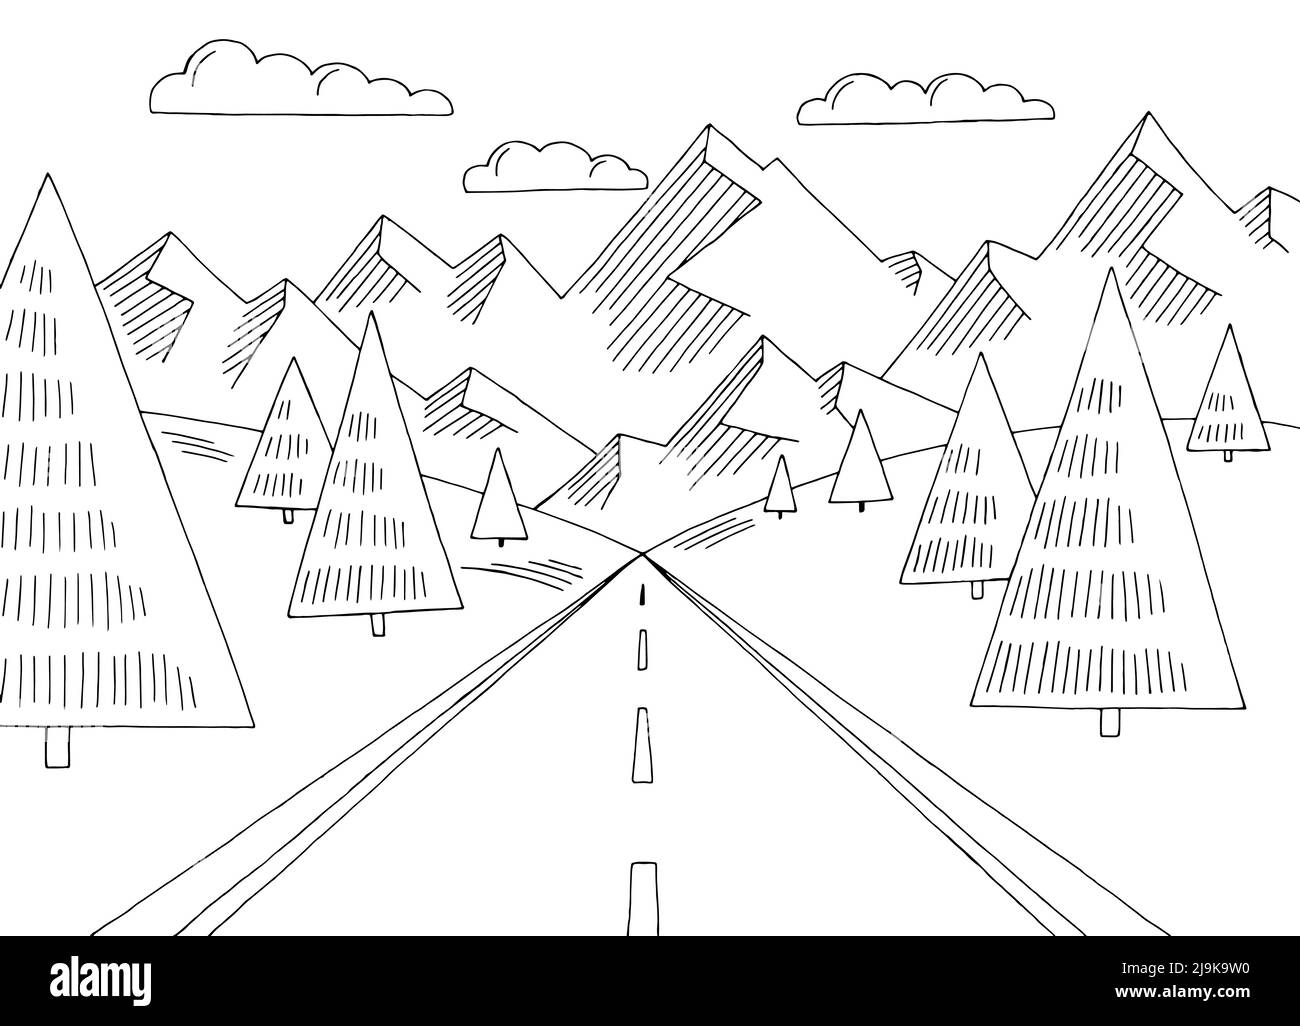 Route de montagne simple graphique noir blanc paysage dessin vecteur d'illustration Illustration de Vecteur